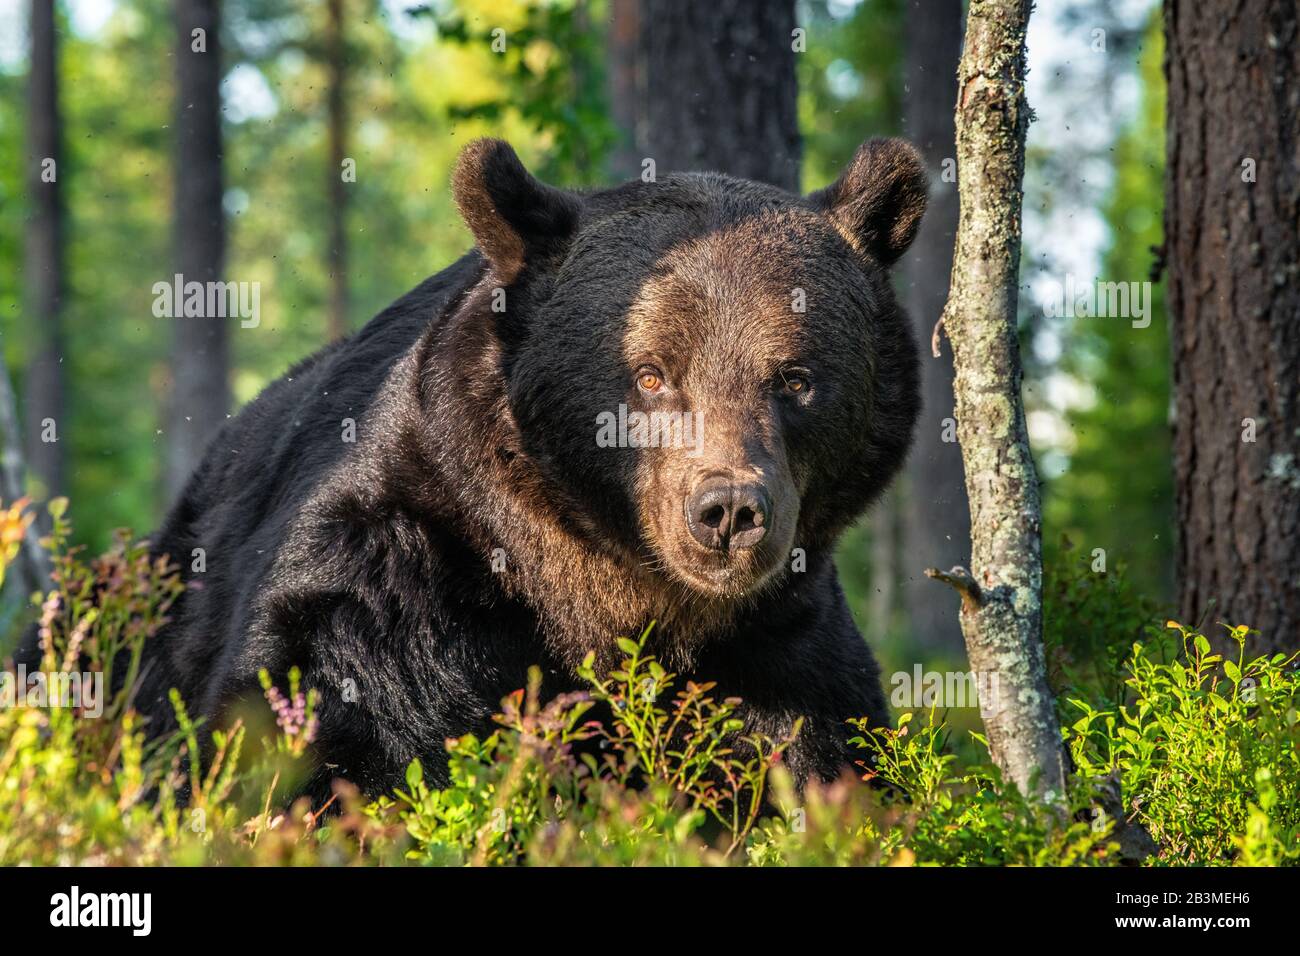 Gros portrait d'un mâle adulte d'ours brun à la lumière du coucher du soleil. Vue de face. Fond naturel vert. Saison estivale. Habitat naturel. Banque D'Images